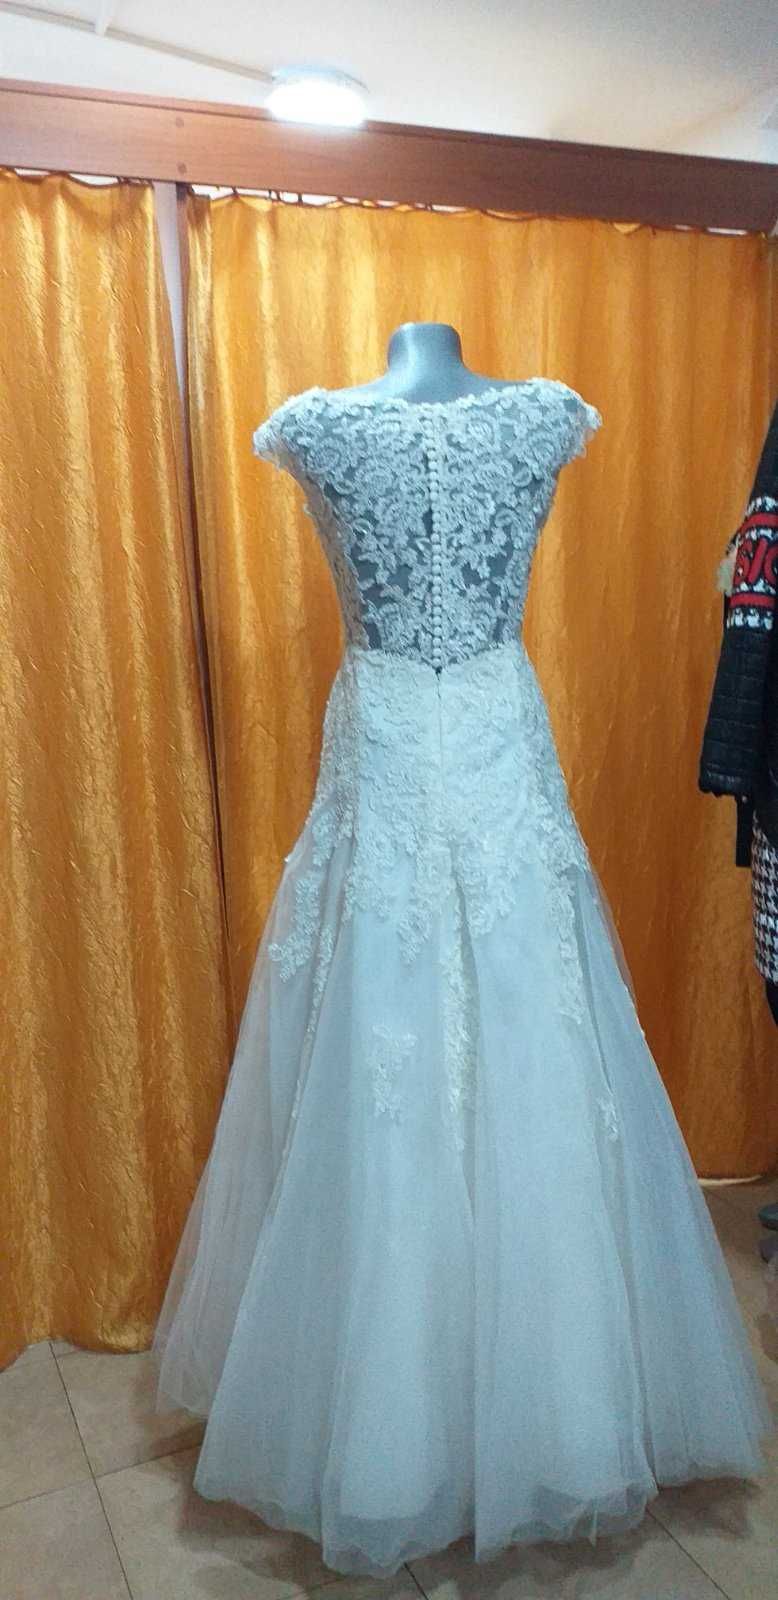 Сватбена рокля от колекцията на модна къща "Романтика"